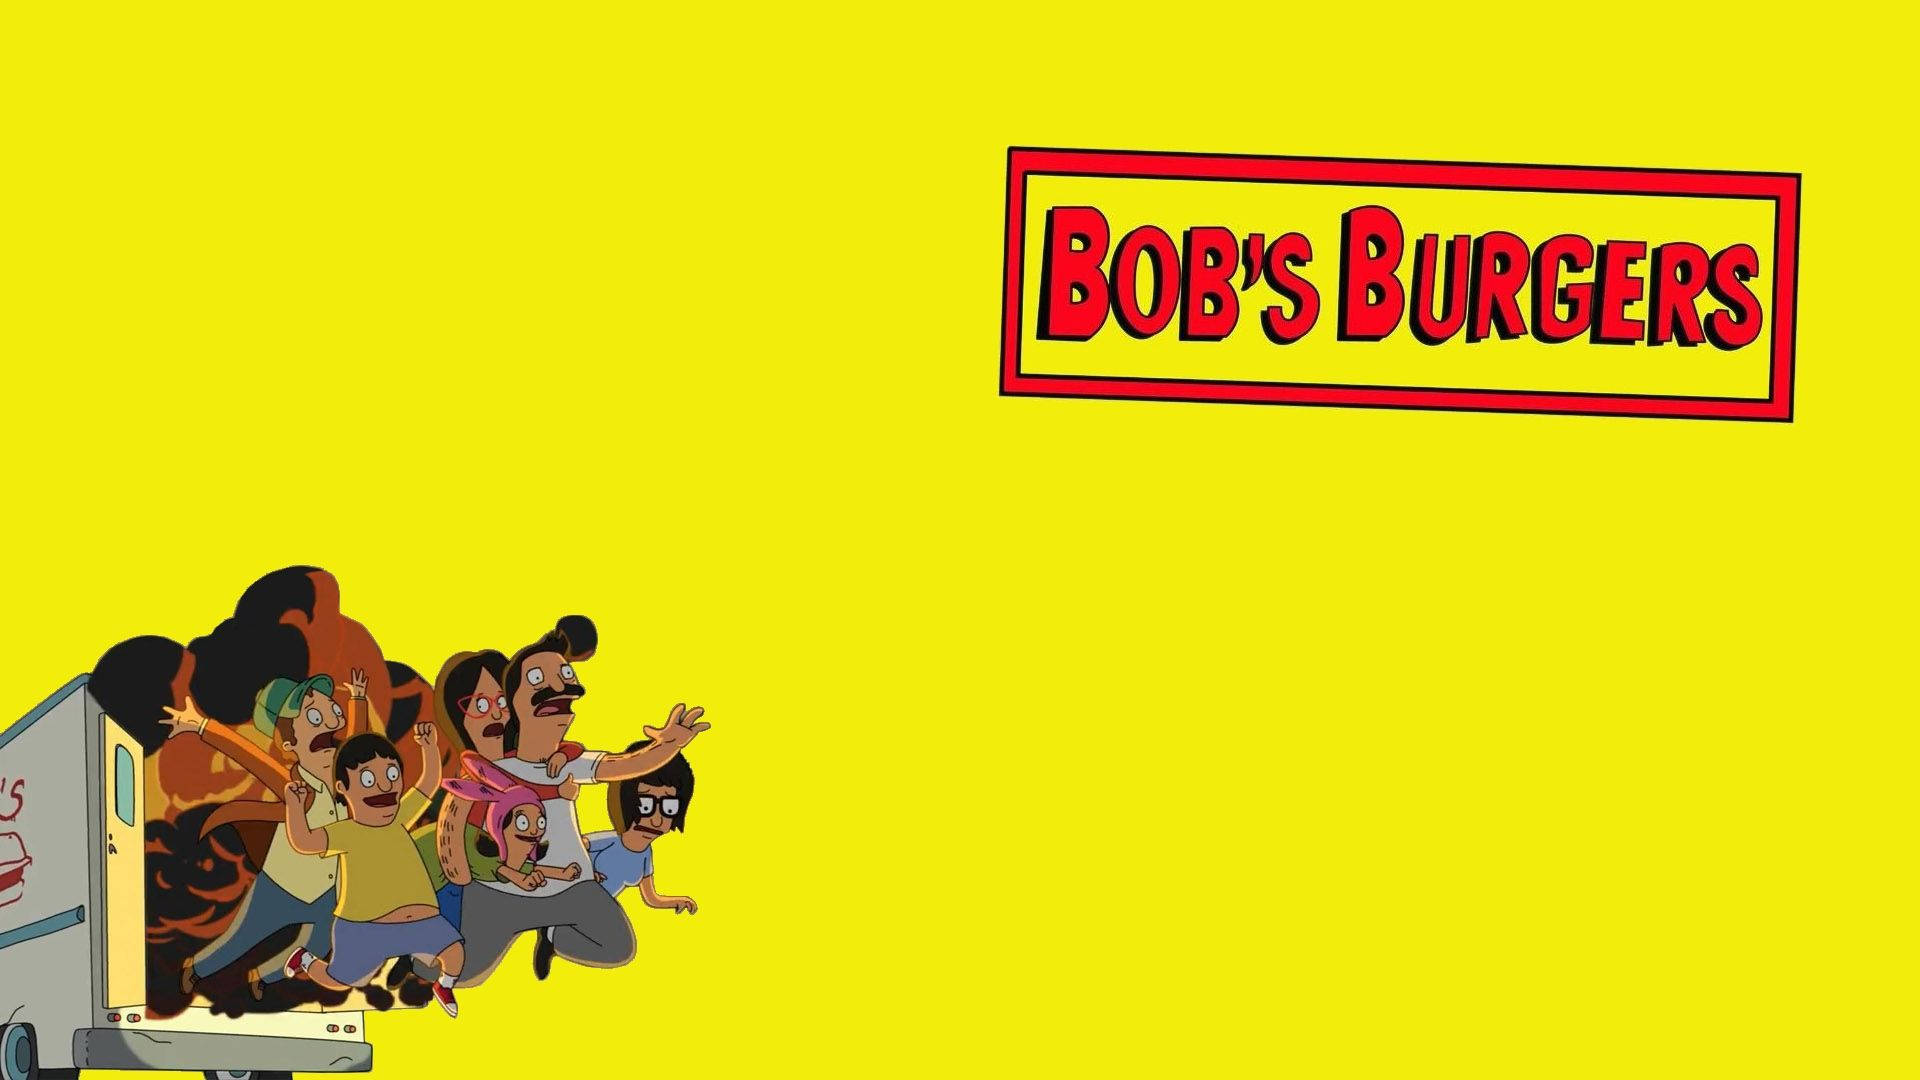 Camiónde Comida De Bobs Burgers En Llamas. Fondo de pantalla